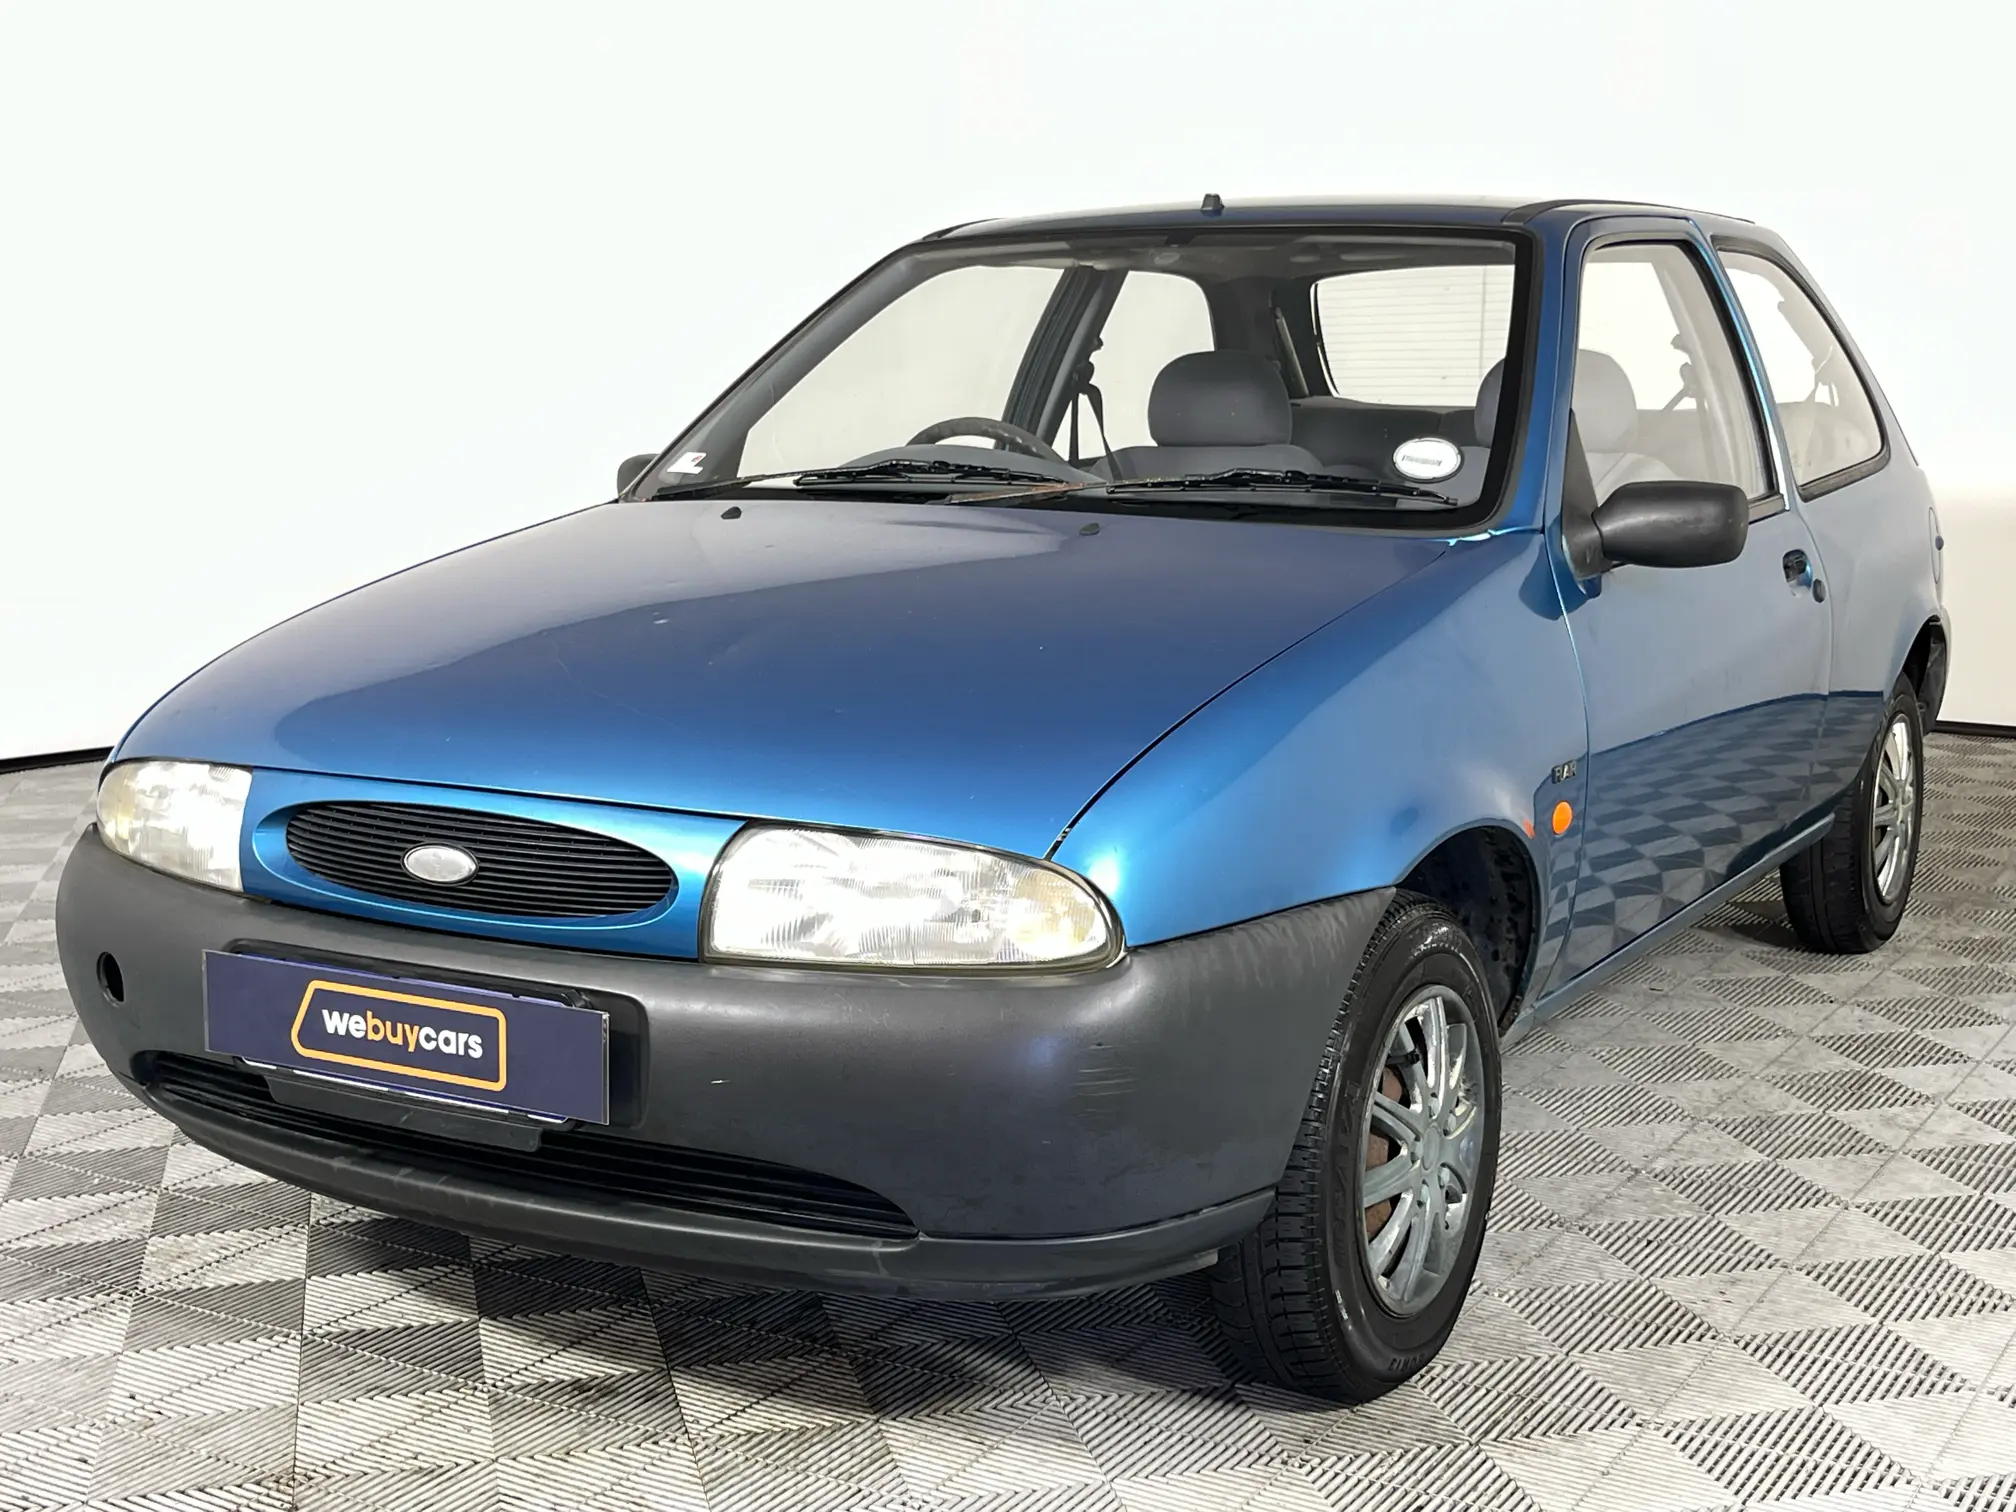 1997 Ford Fiesta Flair 1.3 3D